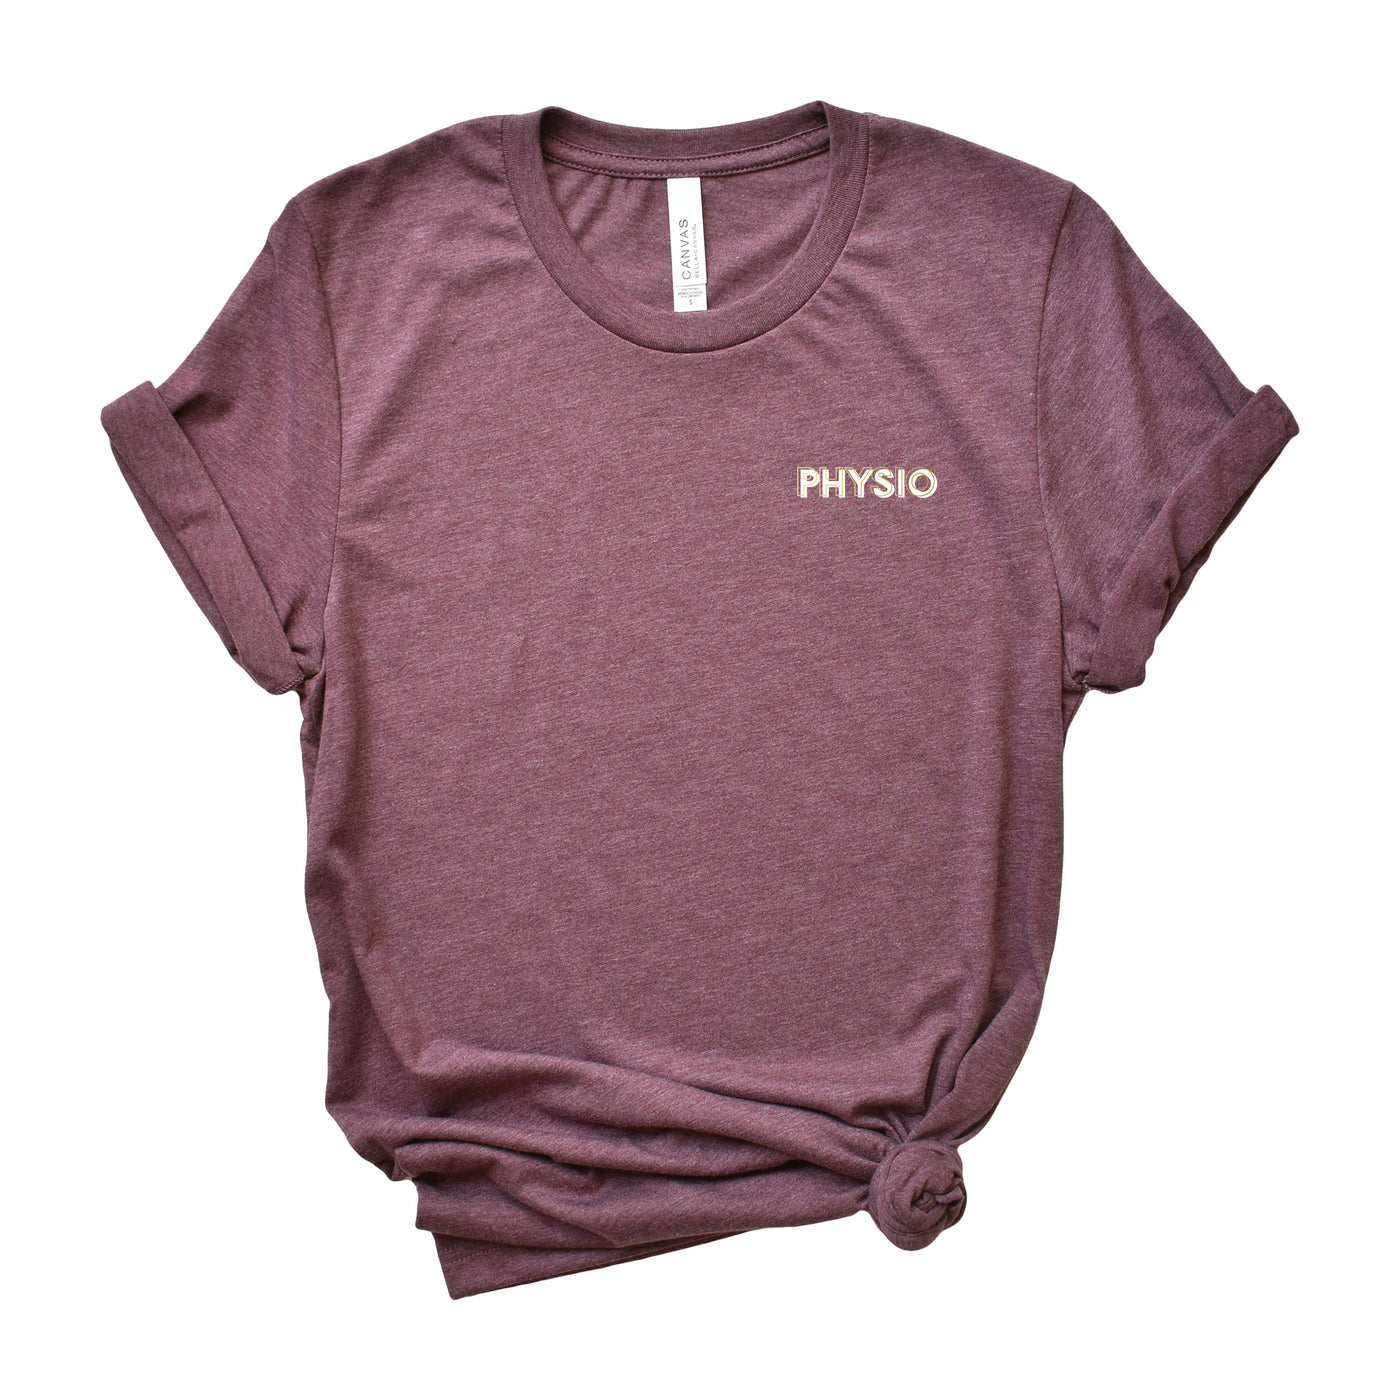 Physio Creds - Shirt